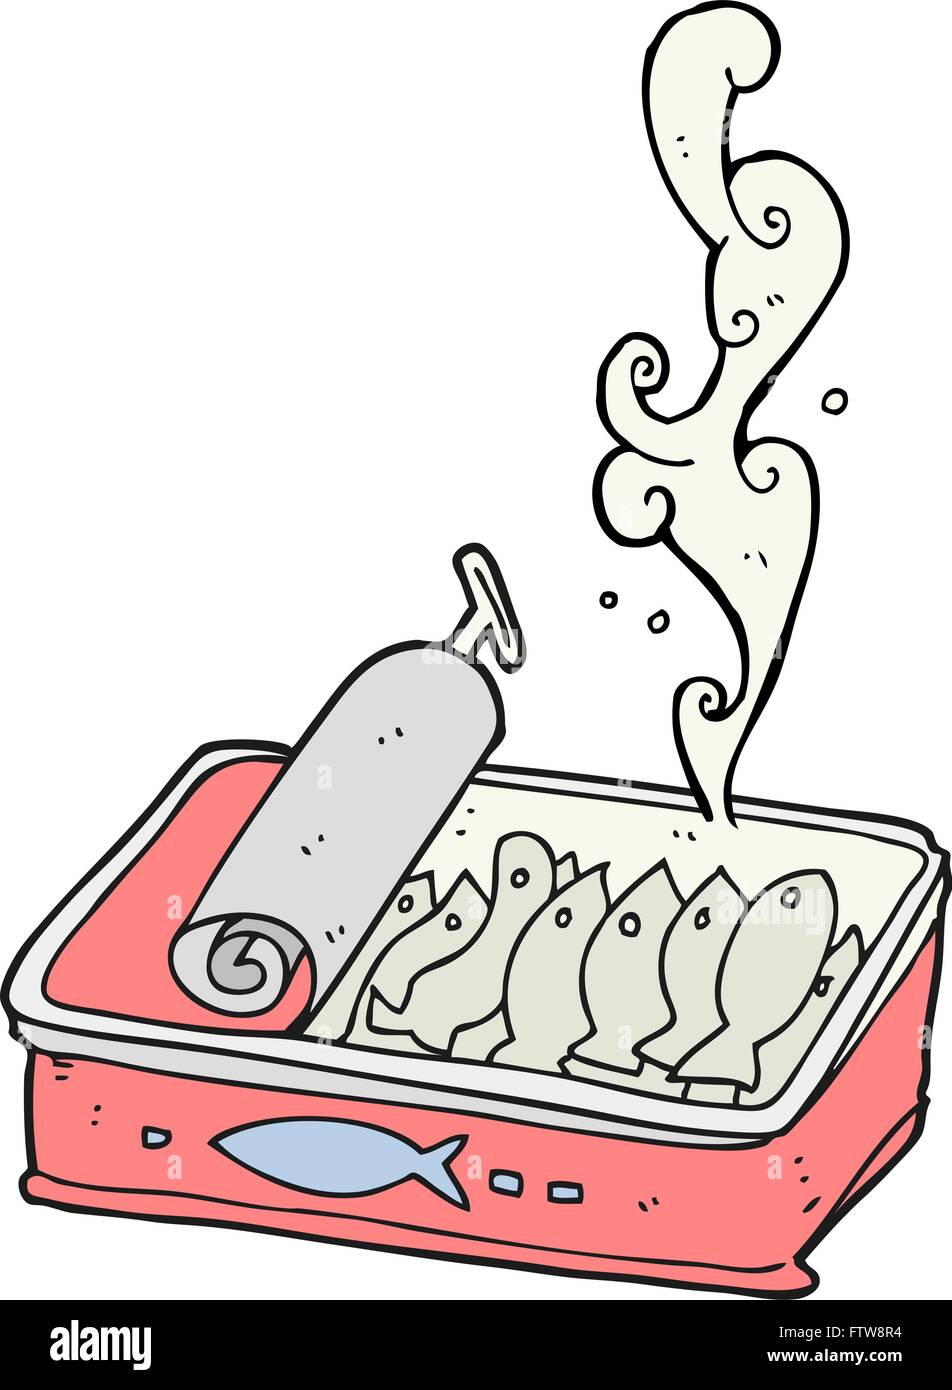 Freehand drawn cartoon peut de sardines Illustration de Vecteur